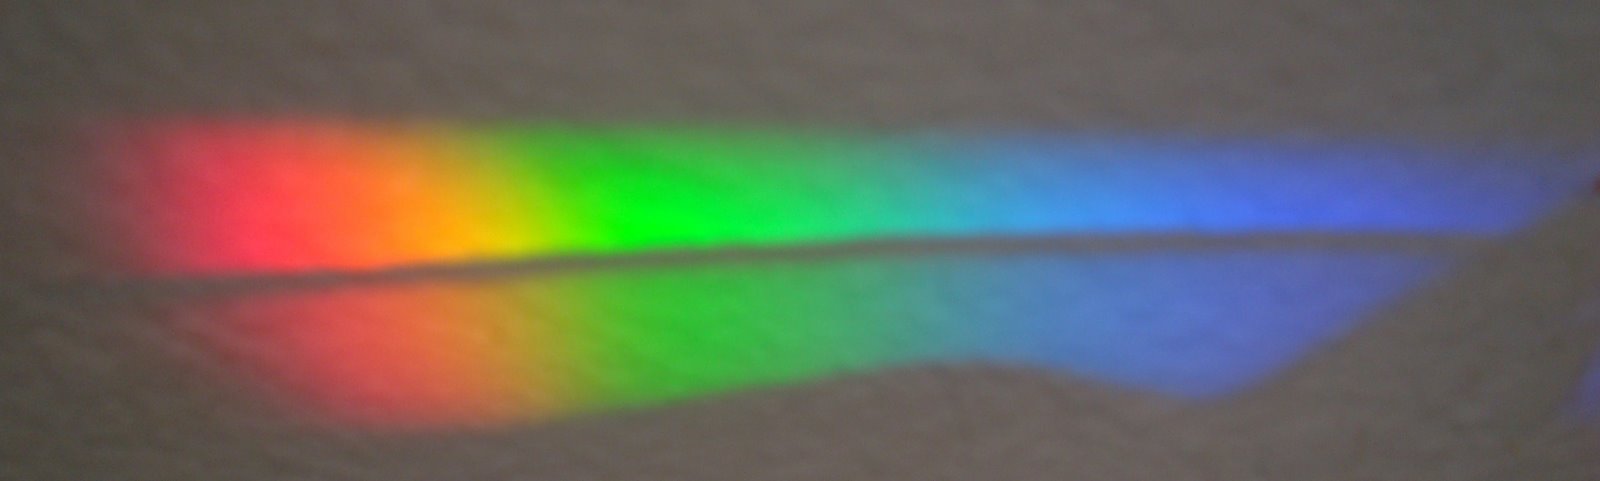 [spectrum+of+light.JPG]